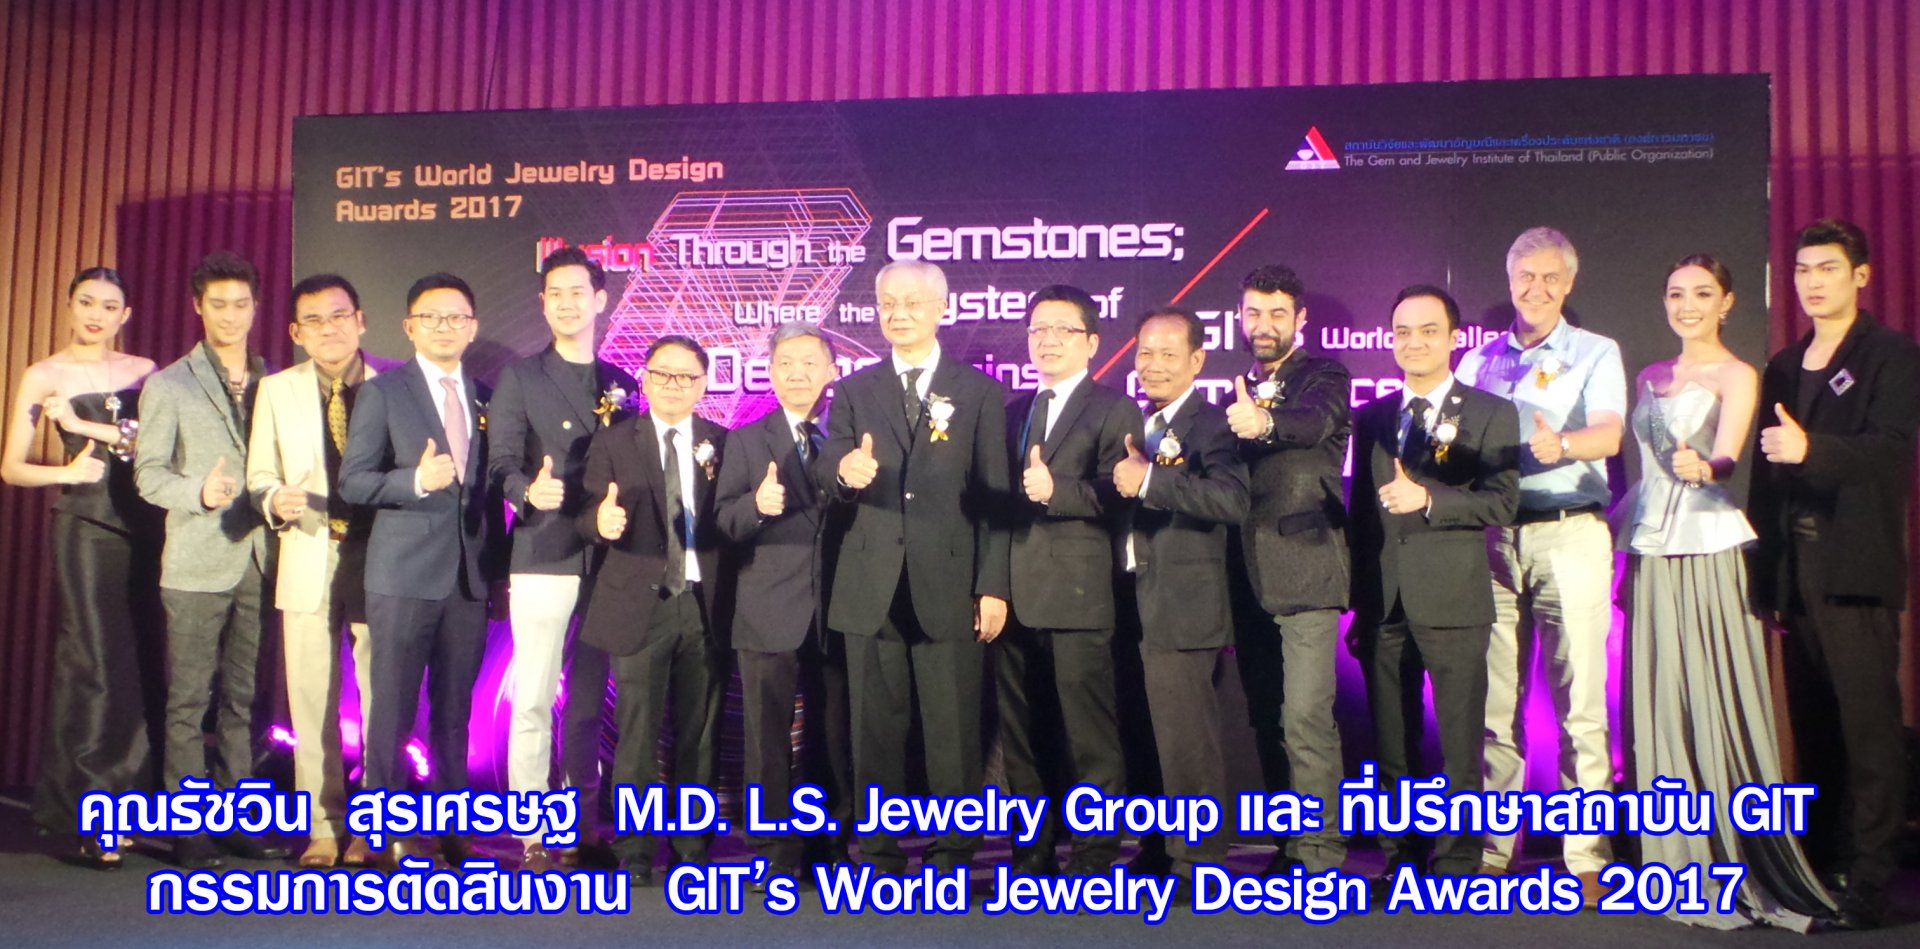 คุณธัชวิน  สุรเศรษฐ  M.D. L.S. Jewelry Group และ ที่ปรึกษาสถาบัน GIT รับเชิญเป็นกรรมการตัดสินงาน GIT’s World Jewelry Design Awards 2017